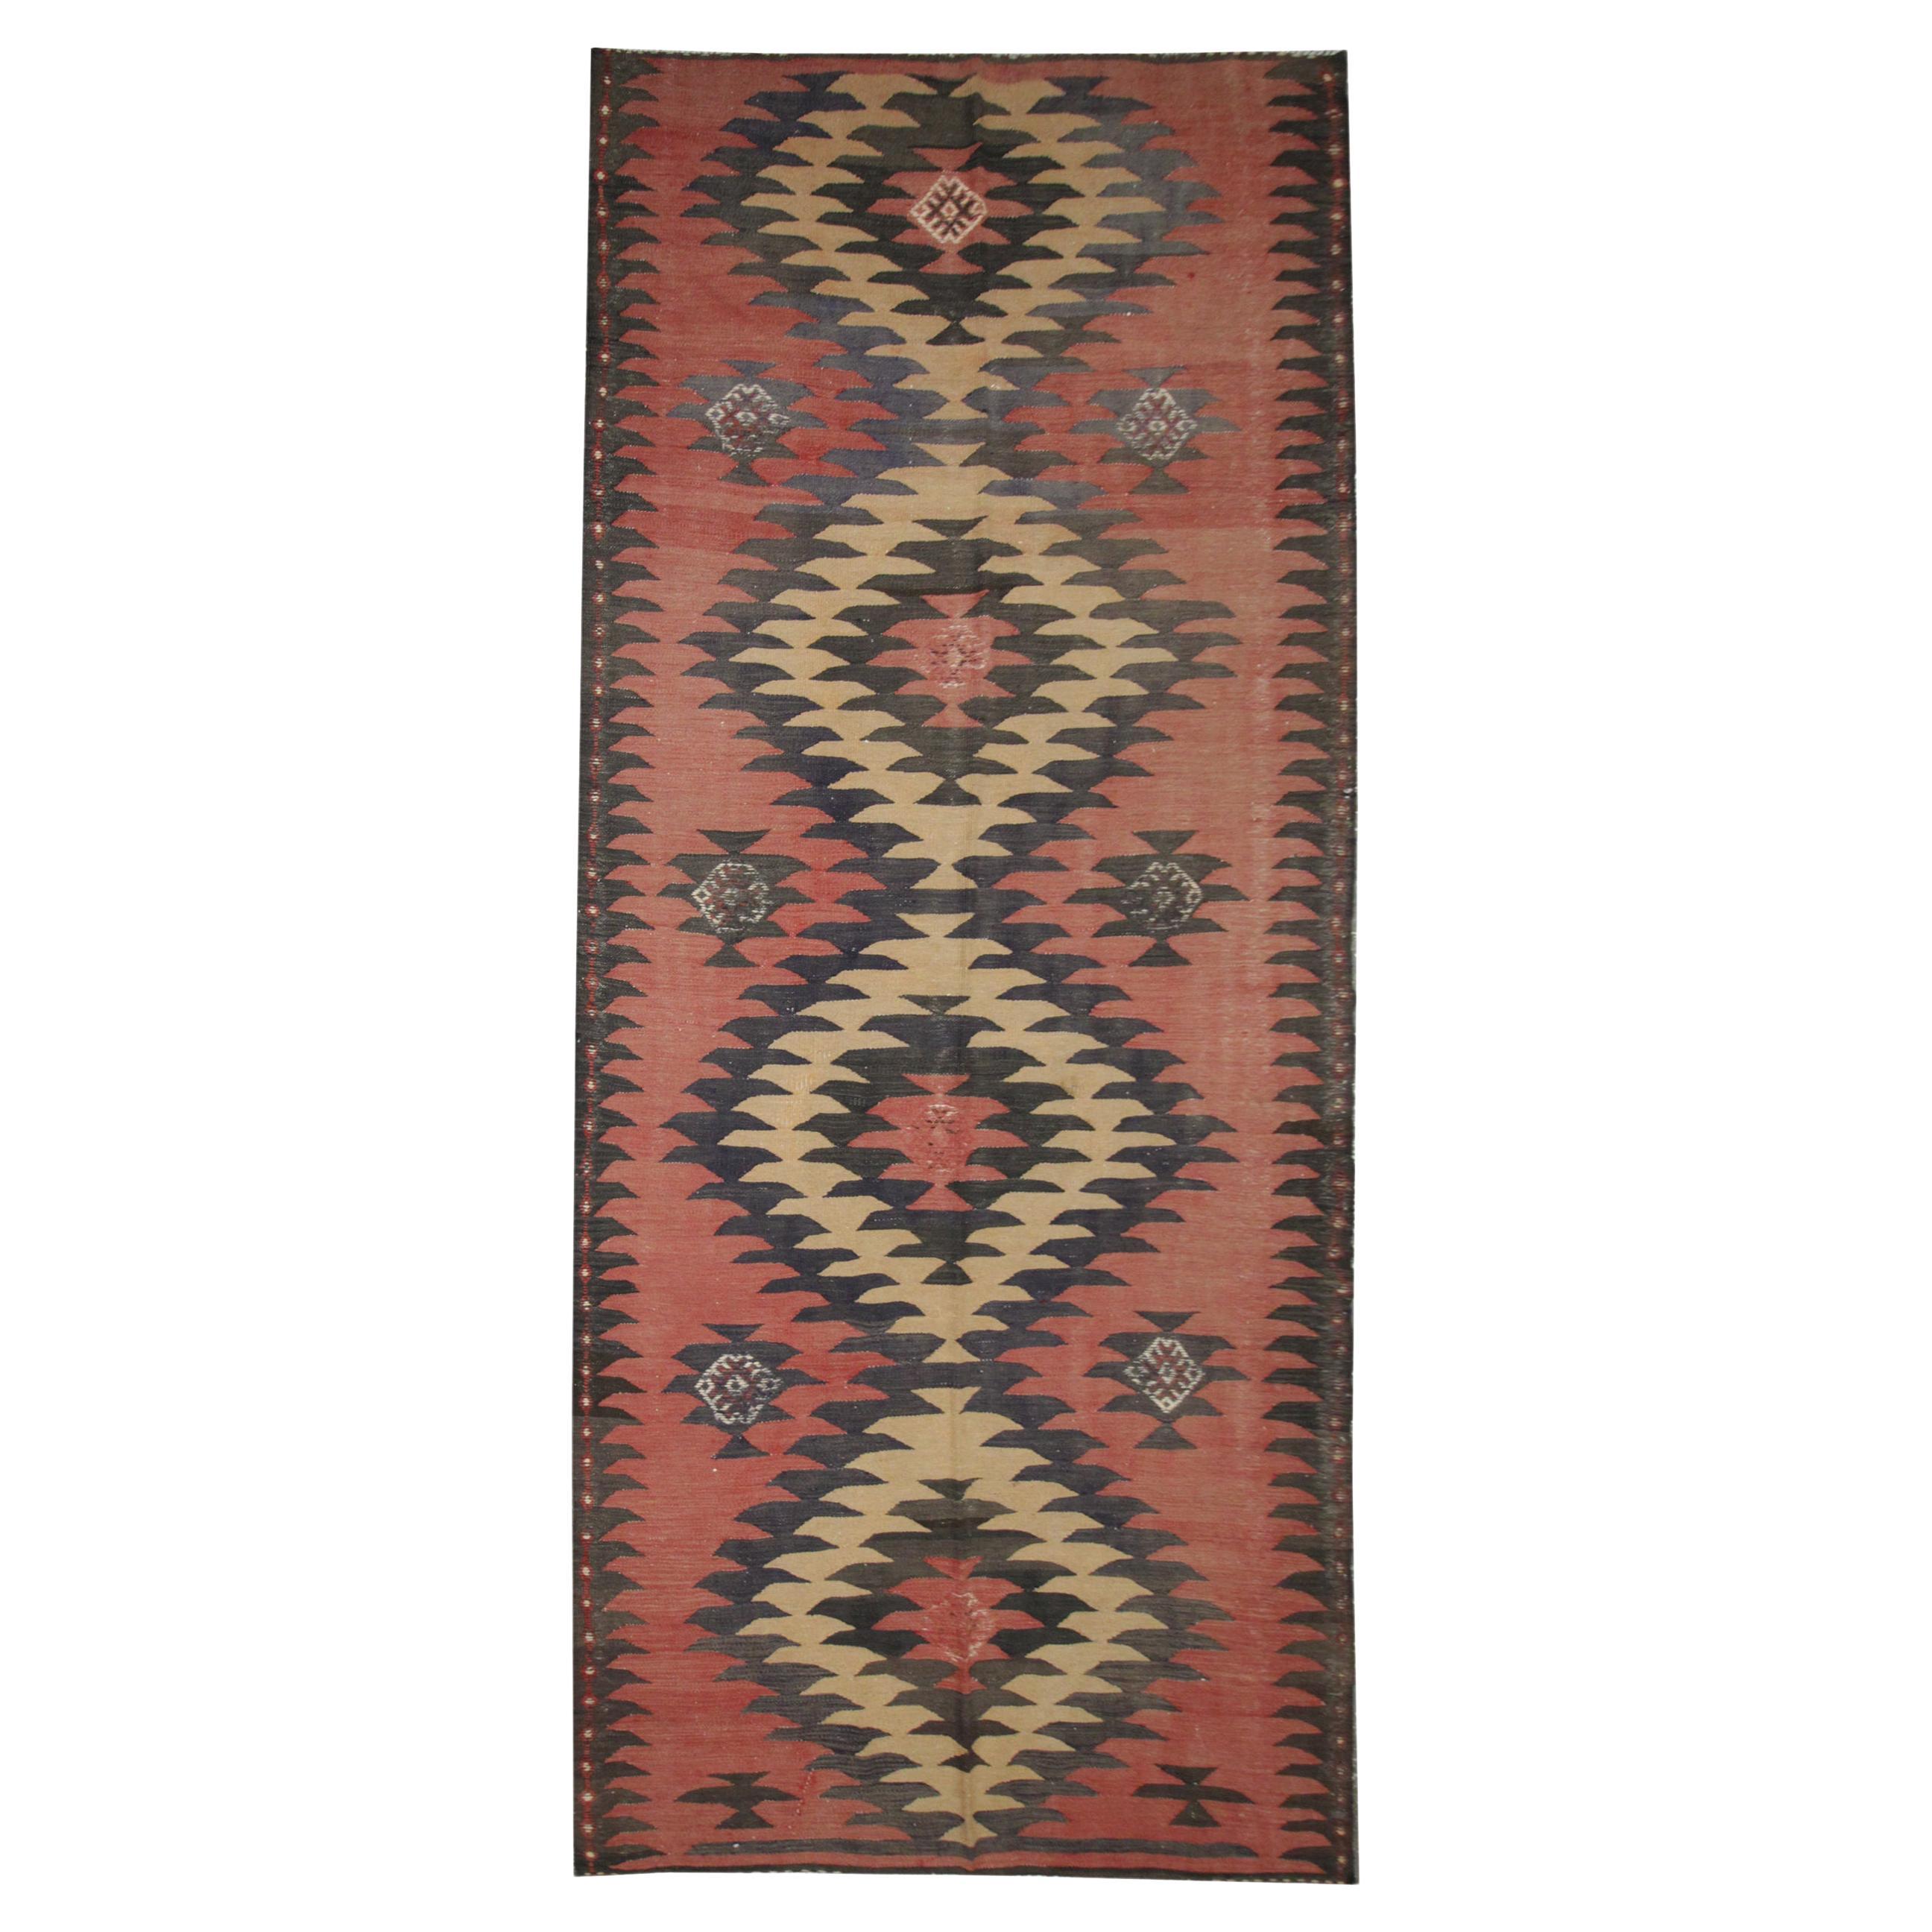 Geometrischer rostfarbener Vintage-Teppich aus Wolle und Kelim, traditioneller flachgewebter Kelim-Teppich